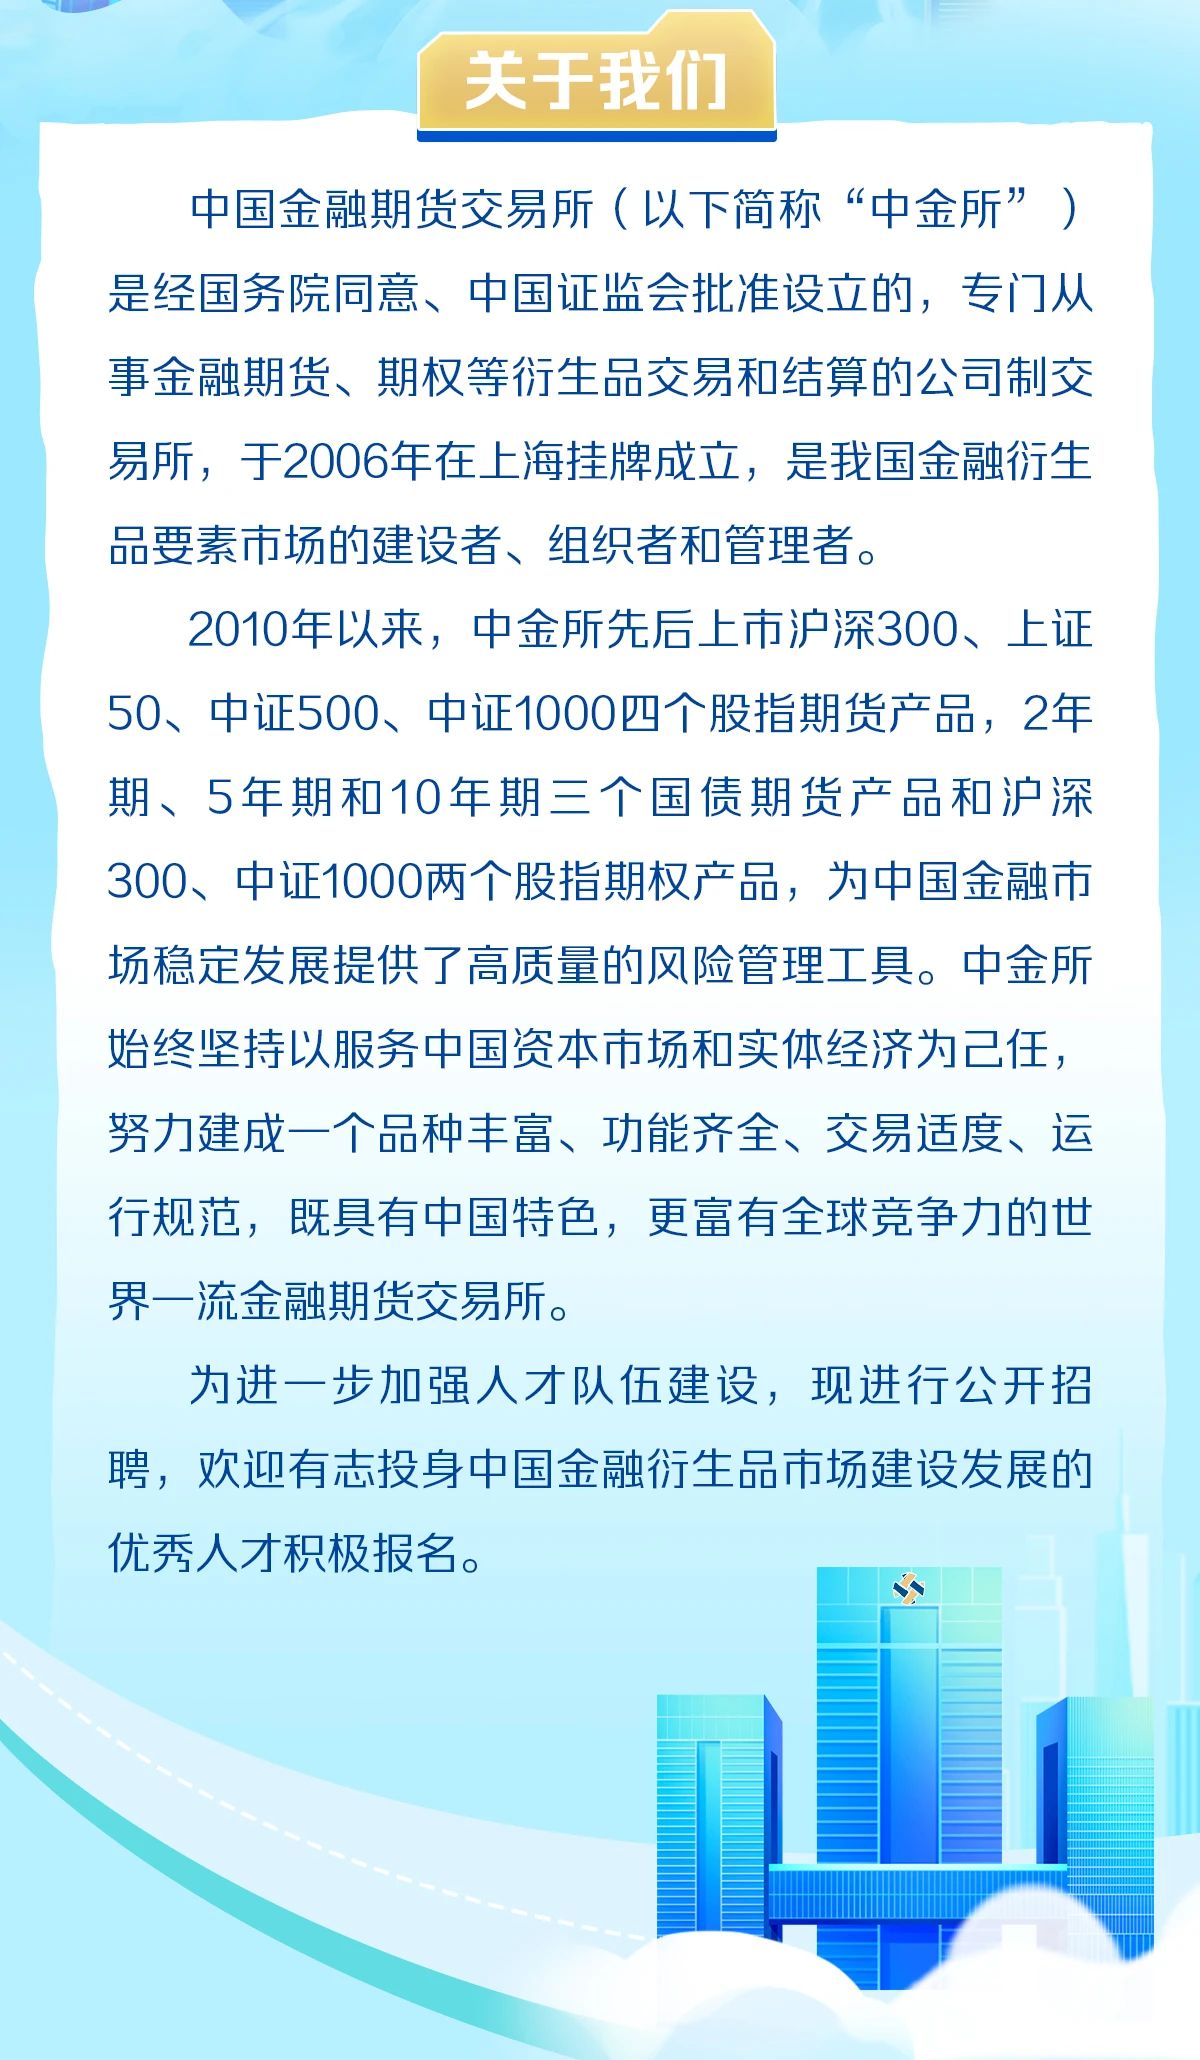 上海人才招聘：中国金融期货交易所2023年应届毕业生、博士后招聘公告